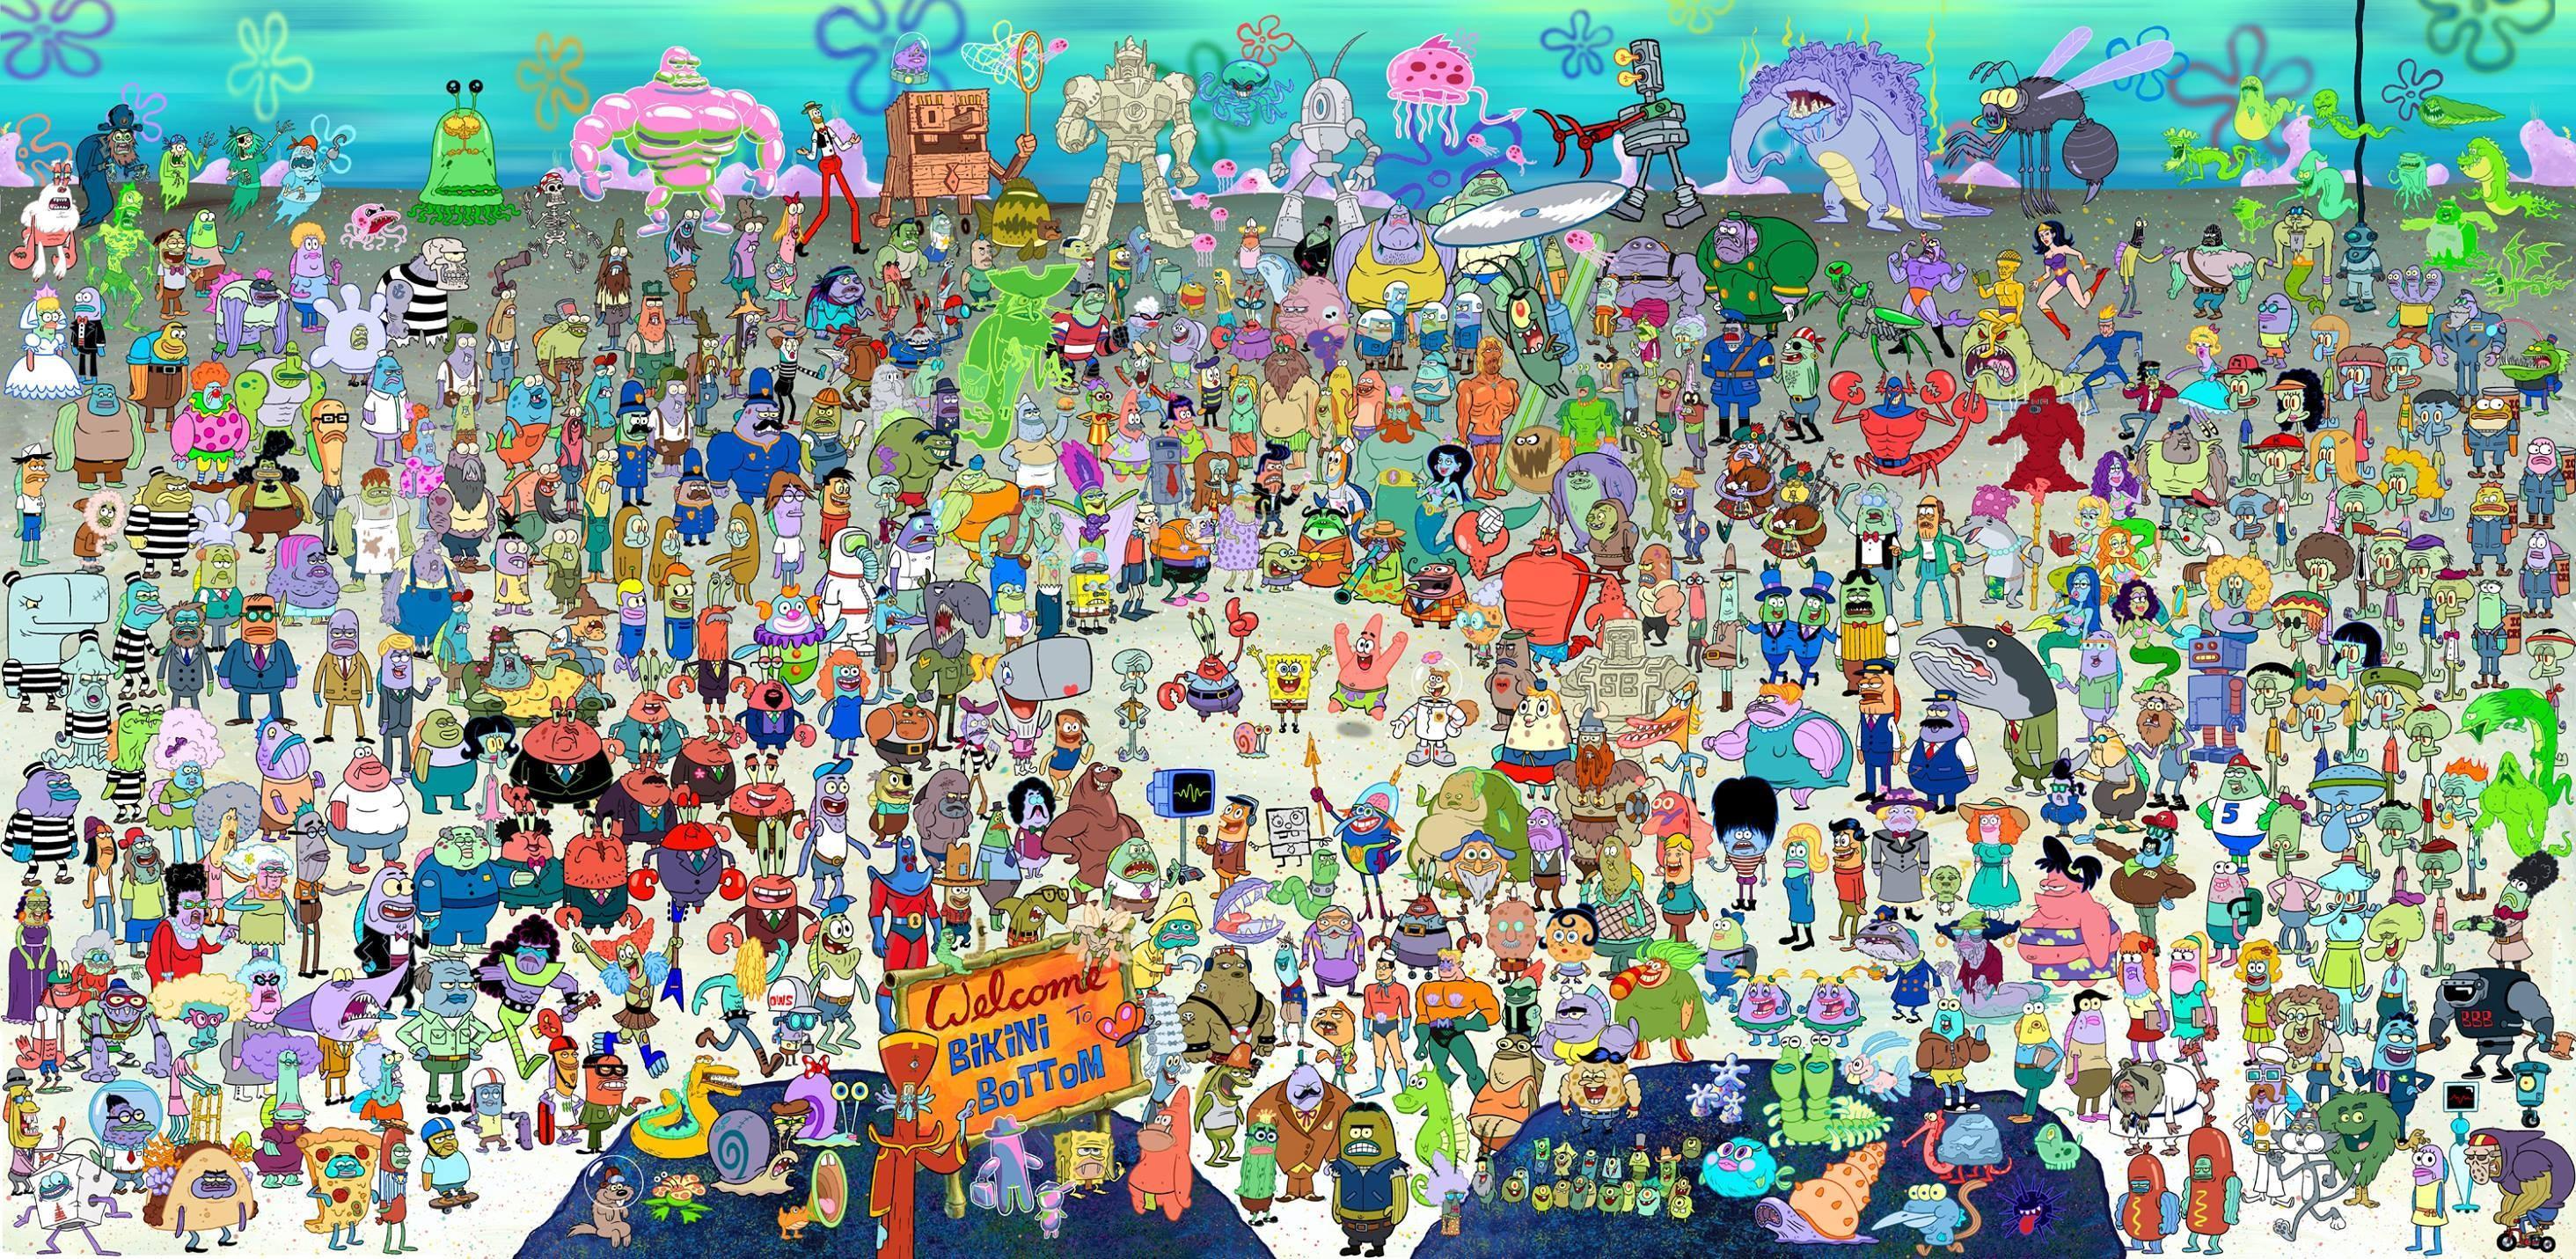 Spongebob Wallpapers For Desktop - Every Spongebob Character In One - HD Wallpaper 